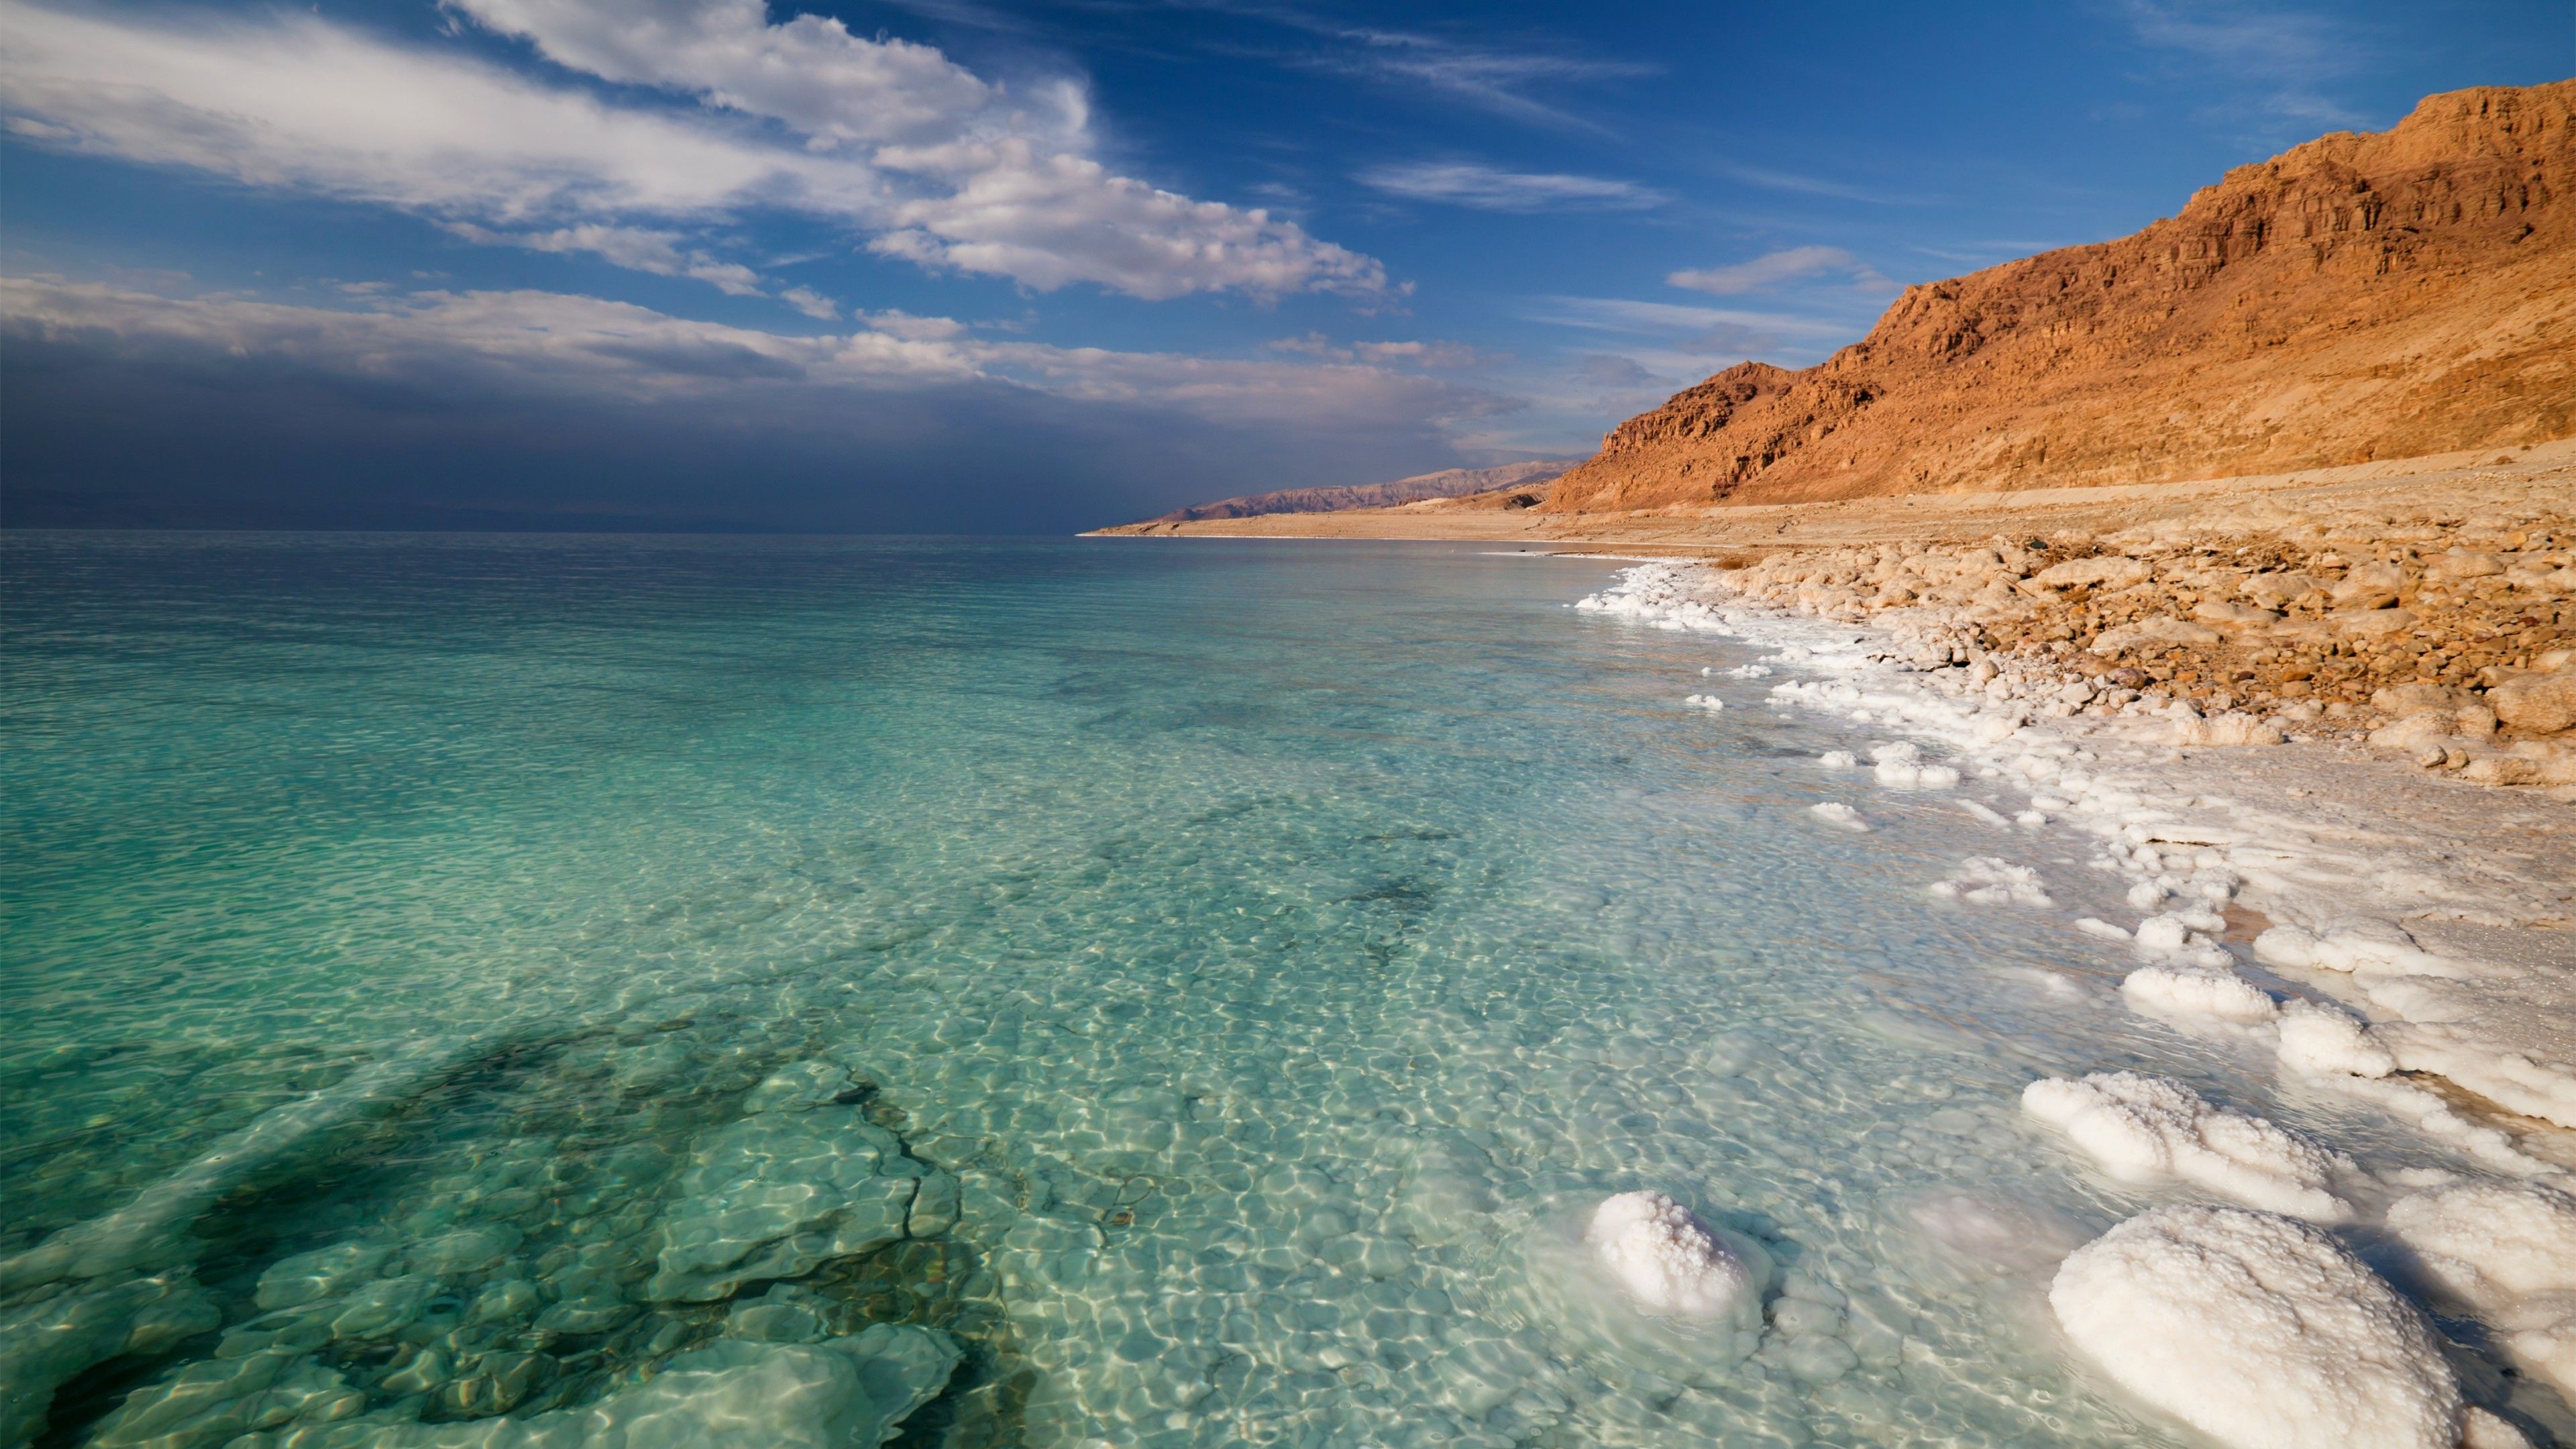 Israel landscapes, Dead Sea beauty, Dead Sea wallpapers, Cave wonders, 3840x2160 4K Desktop